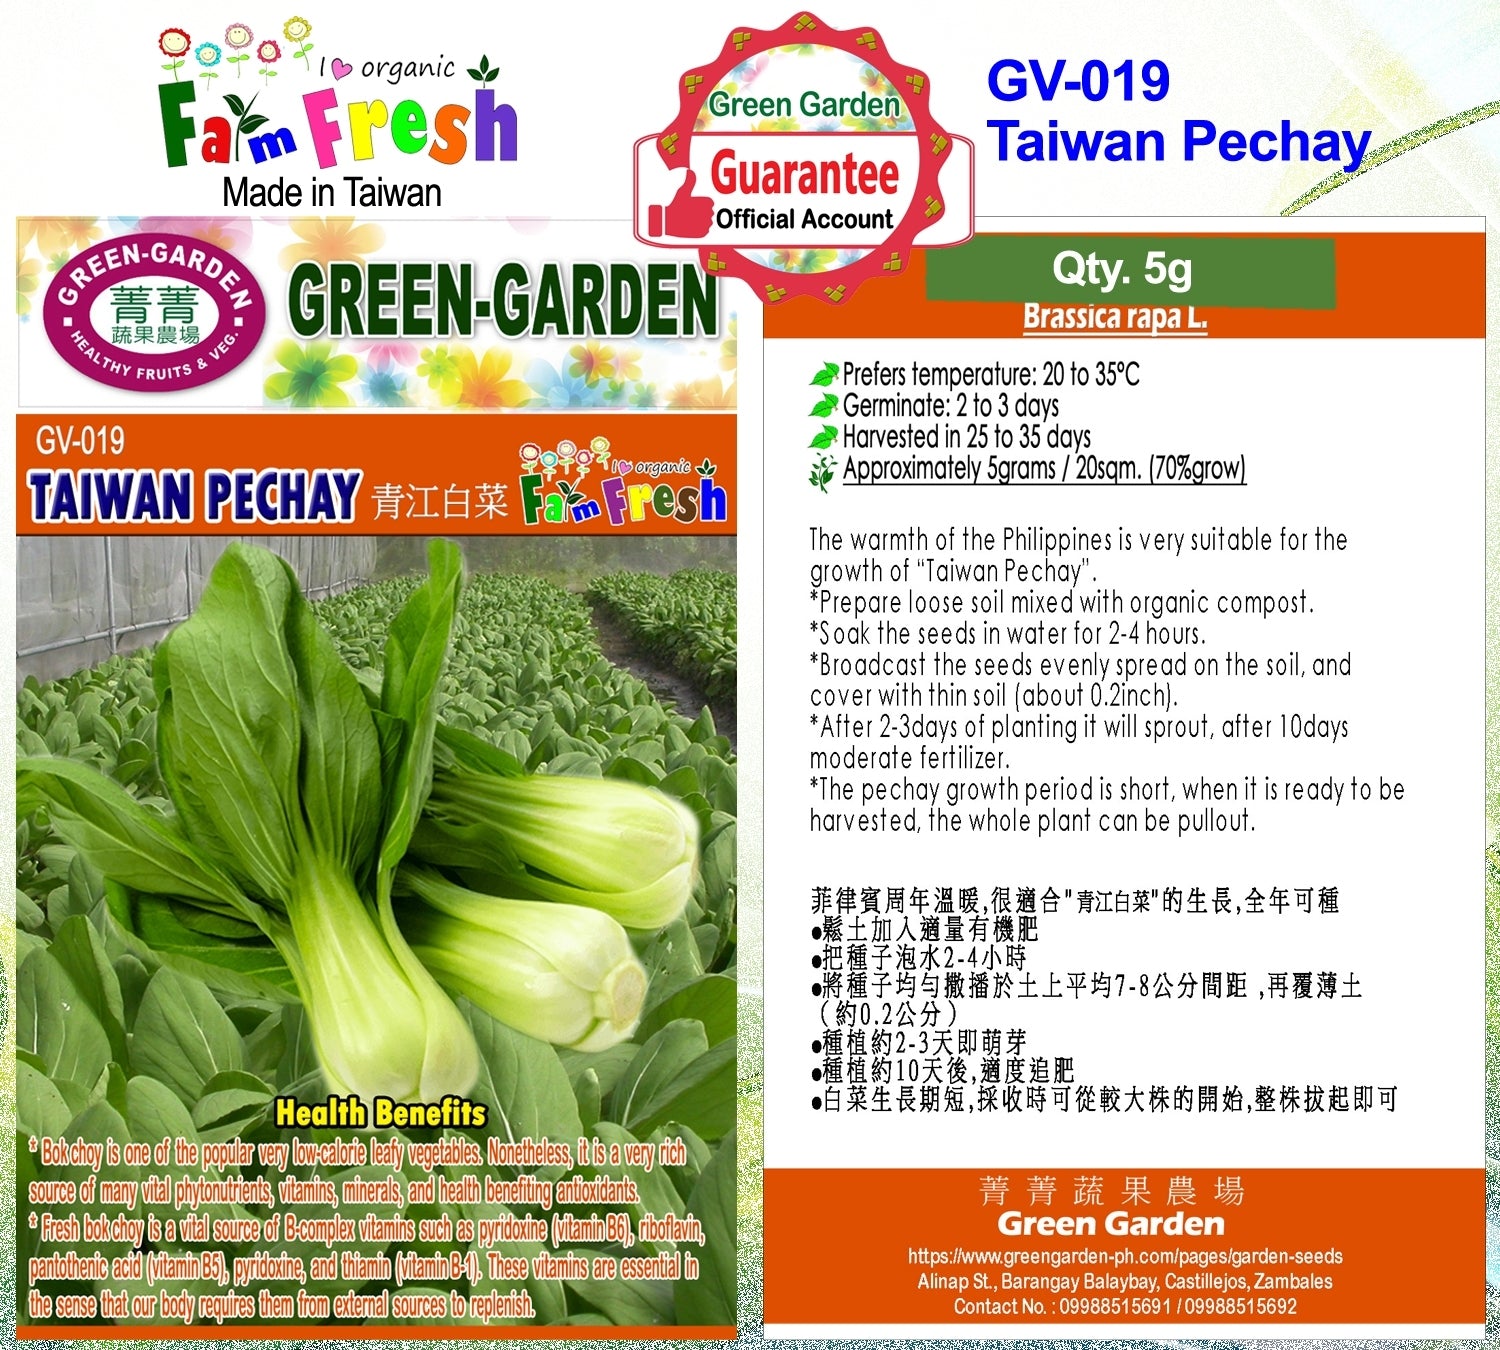 Green Garden Vegetable Seeds (GV-019 Taiwan Pechay)